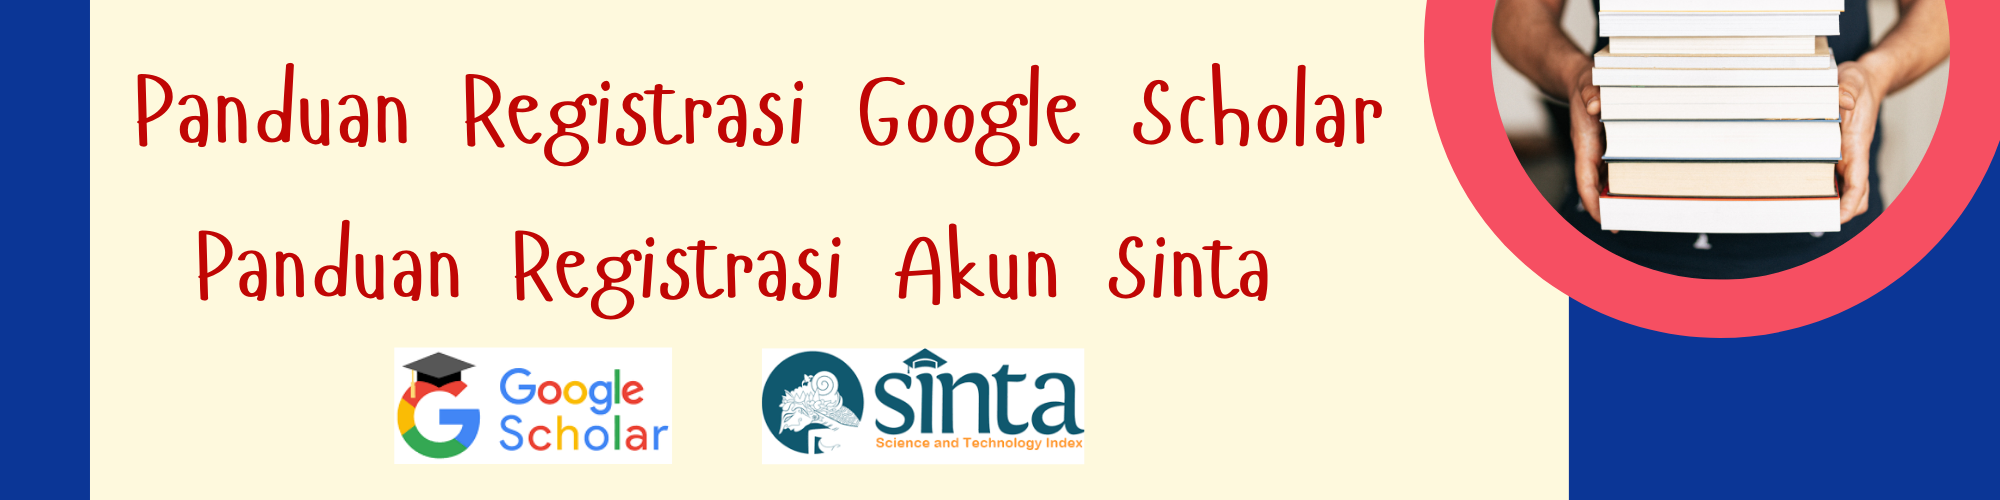 >Panduan Registrasi Google Scholar dan Akun Sinta